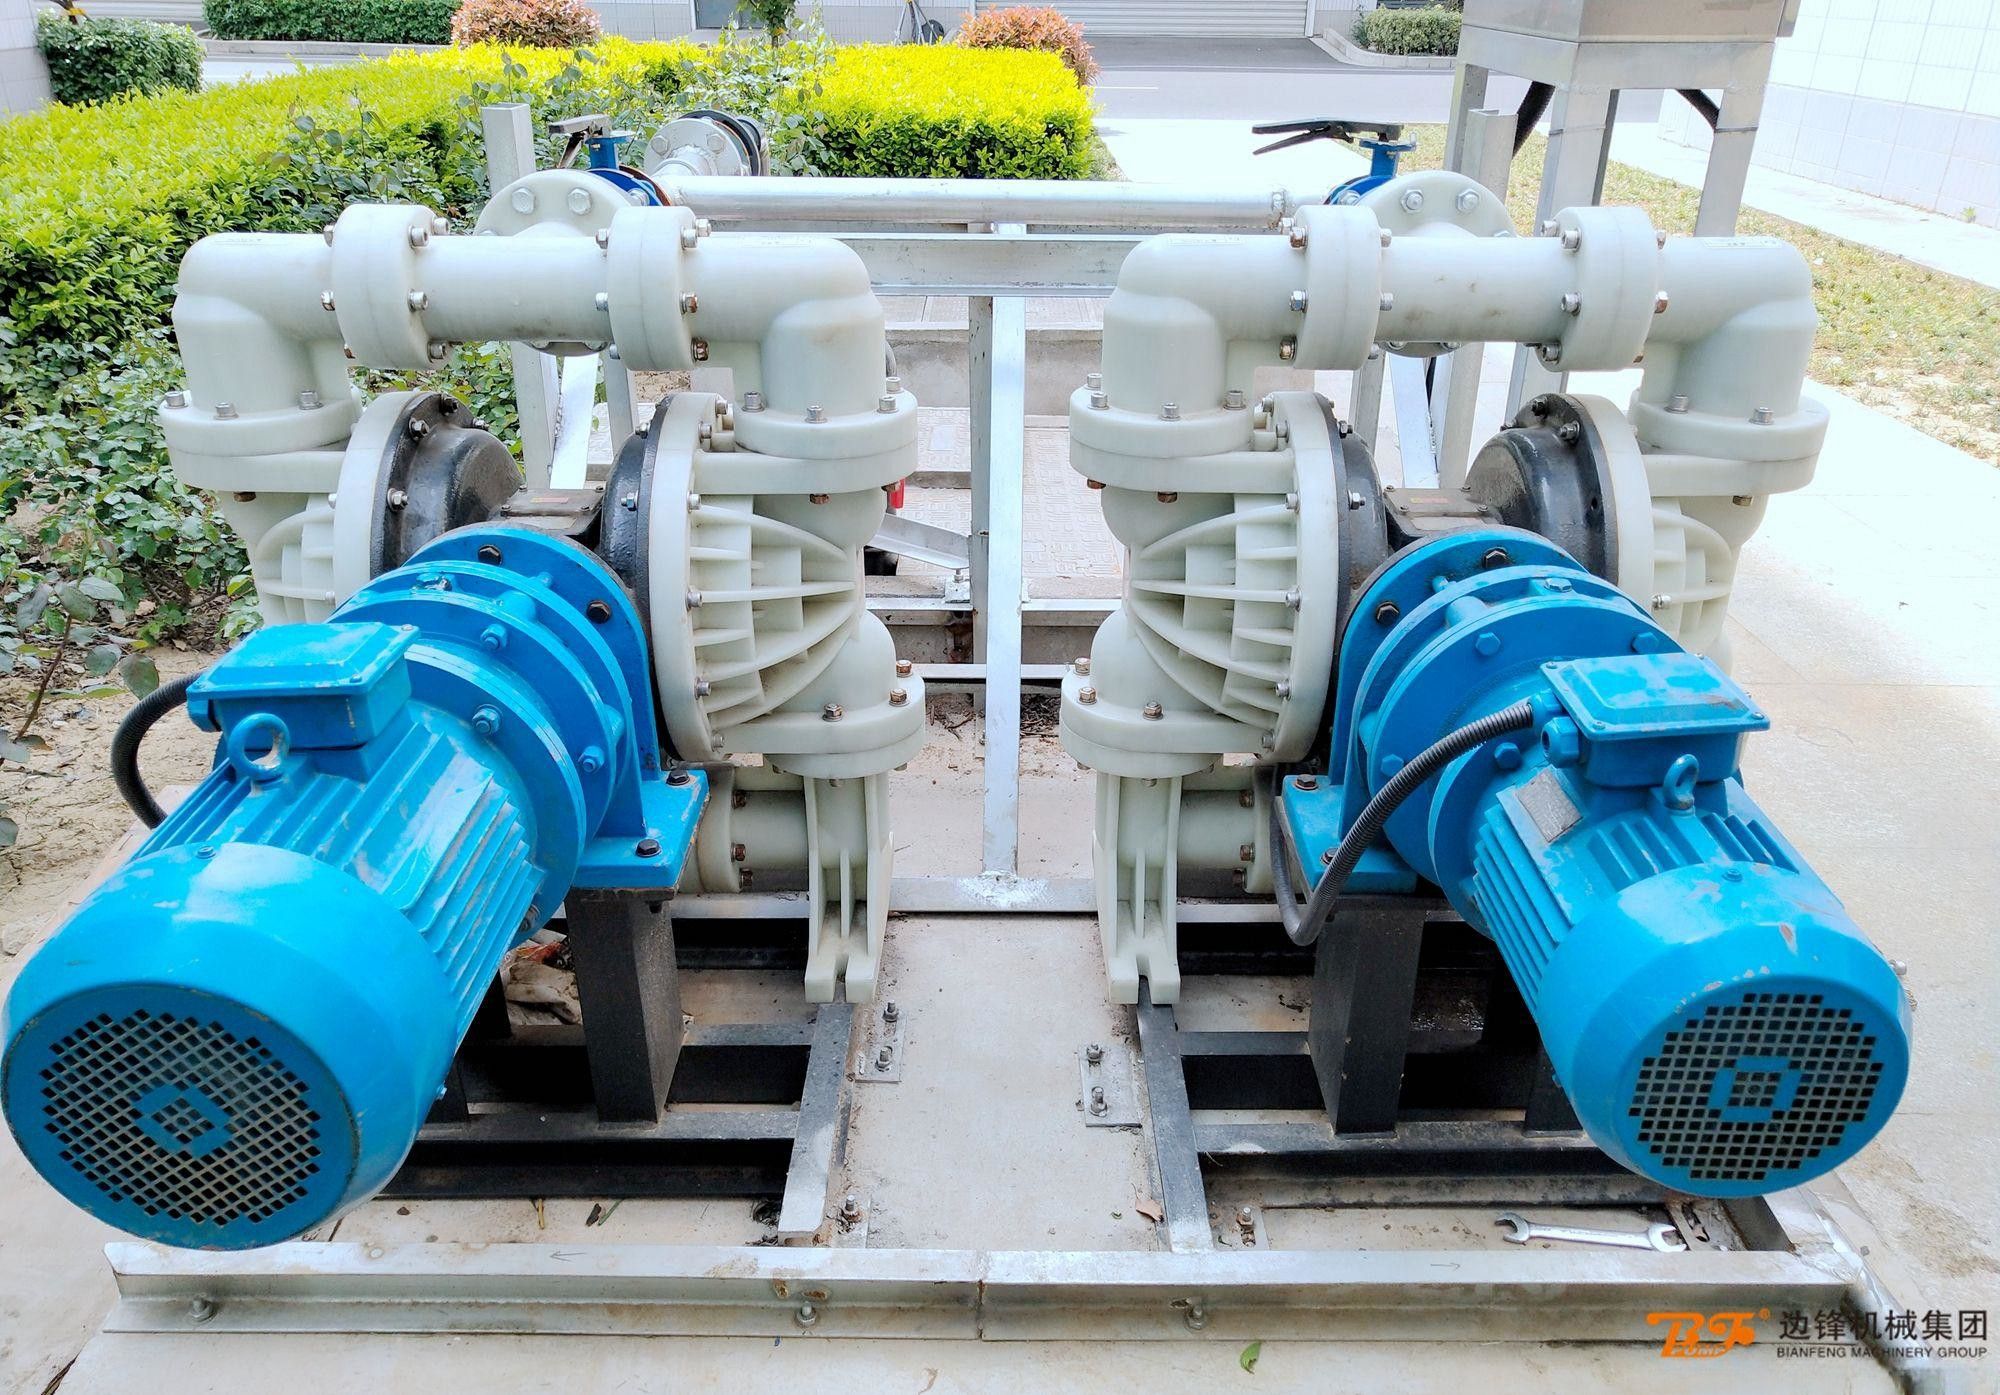 助力企业污水处理方案升级！大流量隔膜泵替换进口泵的又一案例